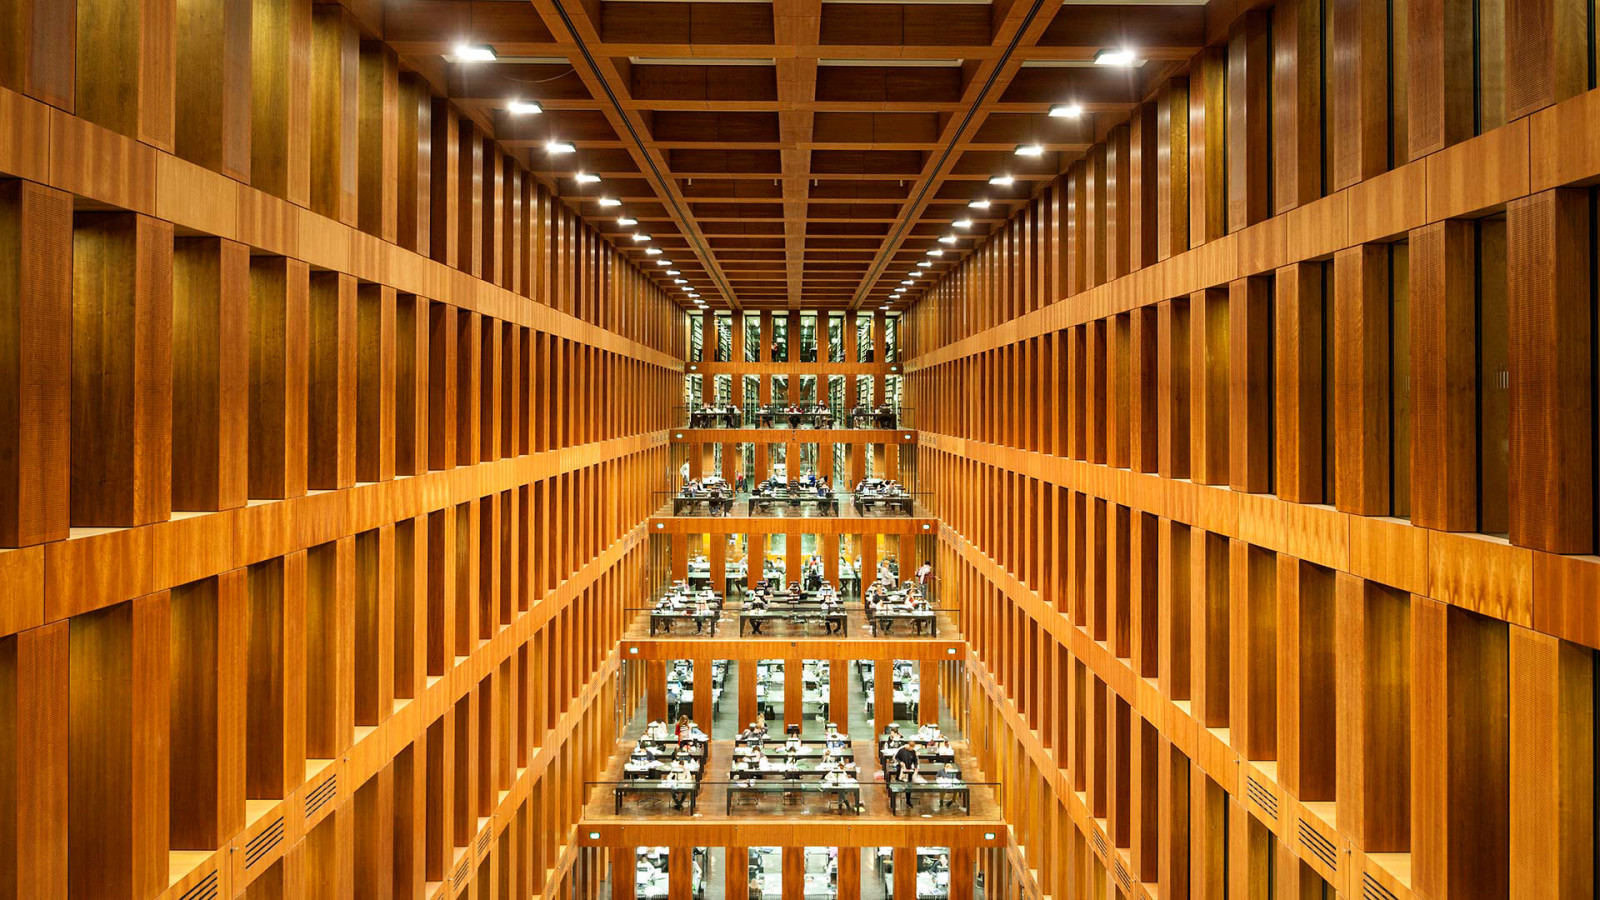 ห้องสมุด, ประเทศเยอรมัน, กรุงเบอร์ลิน, มหาวิทยาลัย Humboldt